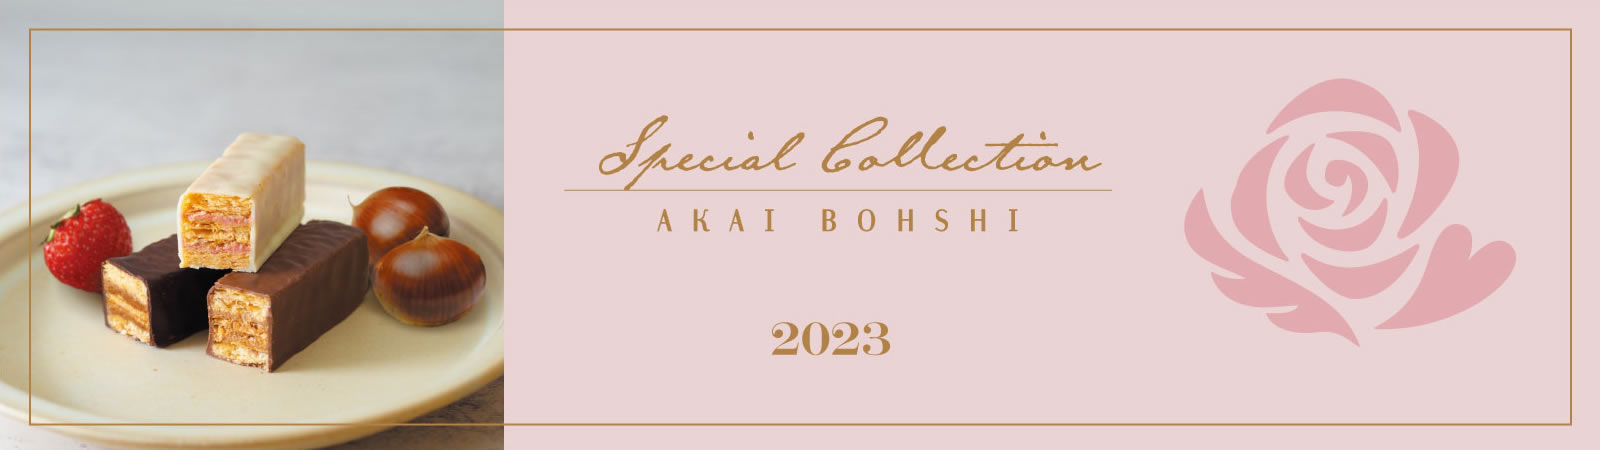 Seasonal Collection 2023